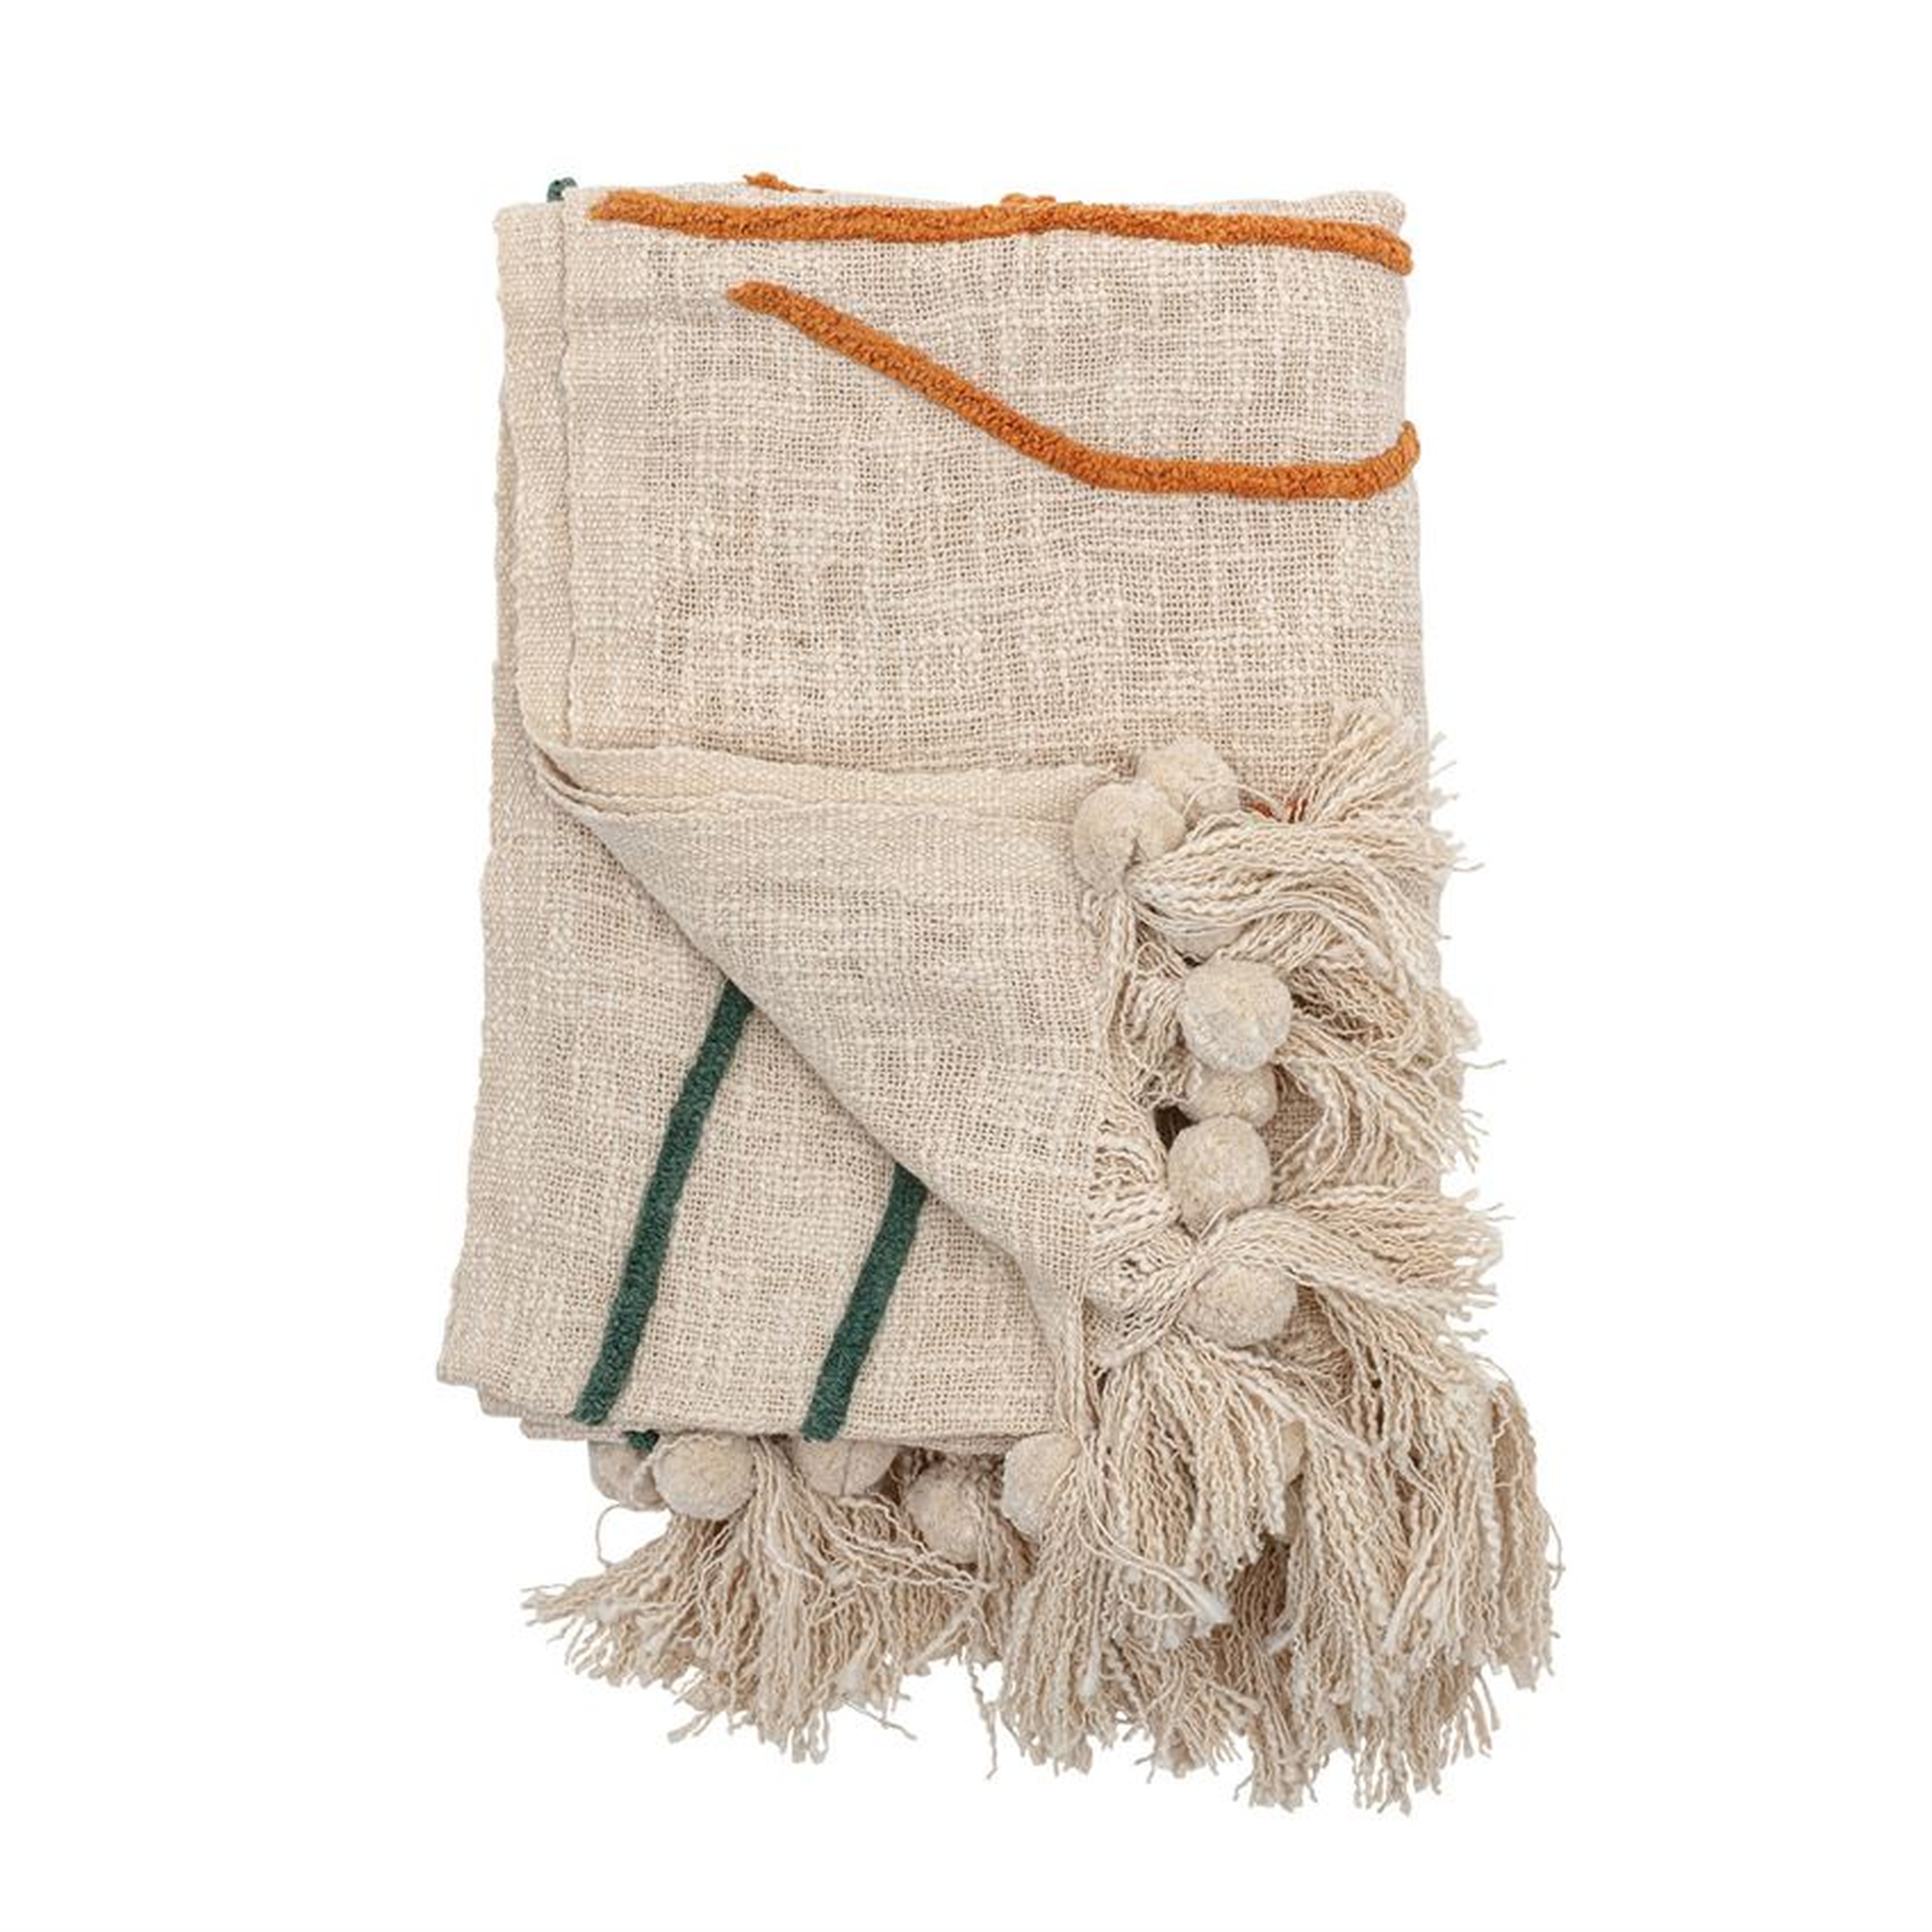 Cotton Embroidered Throw Blanket with Tassels, Cream - Moss & Wilder